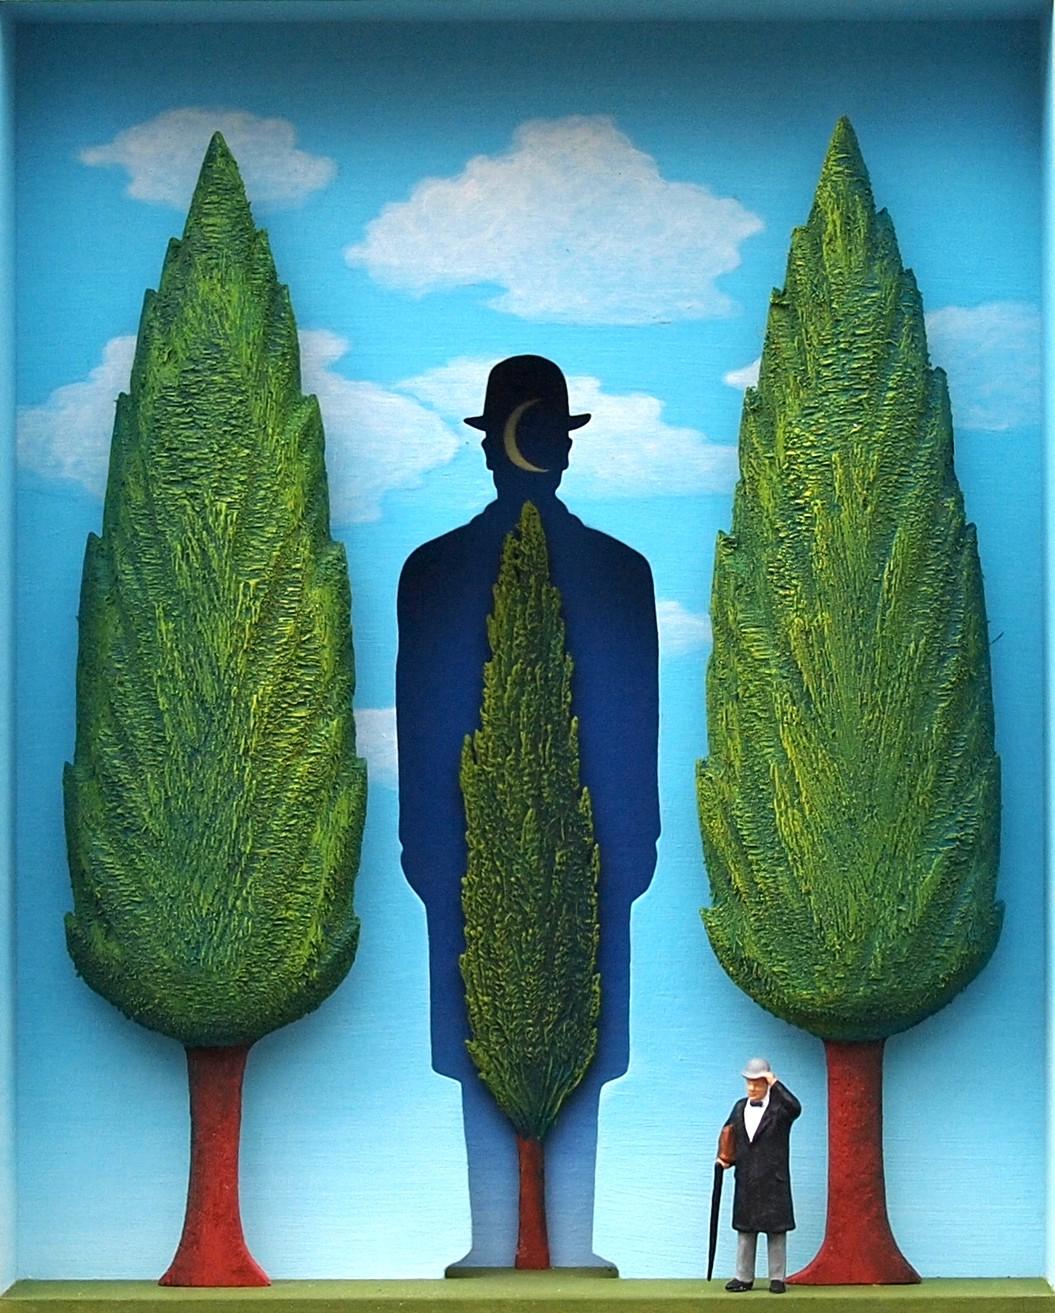 The Garden of Magritte (Le jardin de Magritte) - œuvre d'art contemporaine hommage au surréalisme belge  - Mixed Media Art de Volker Kuhn